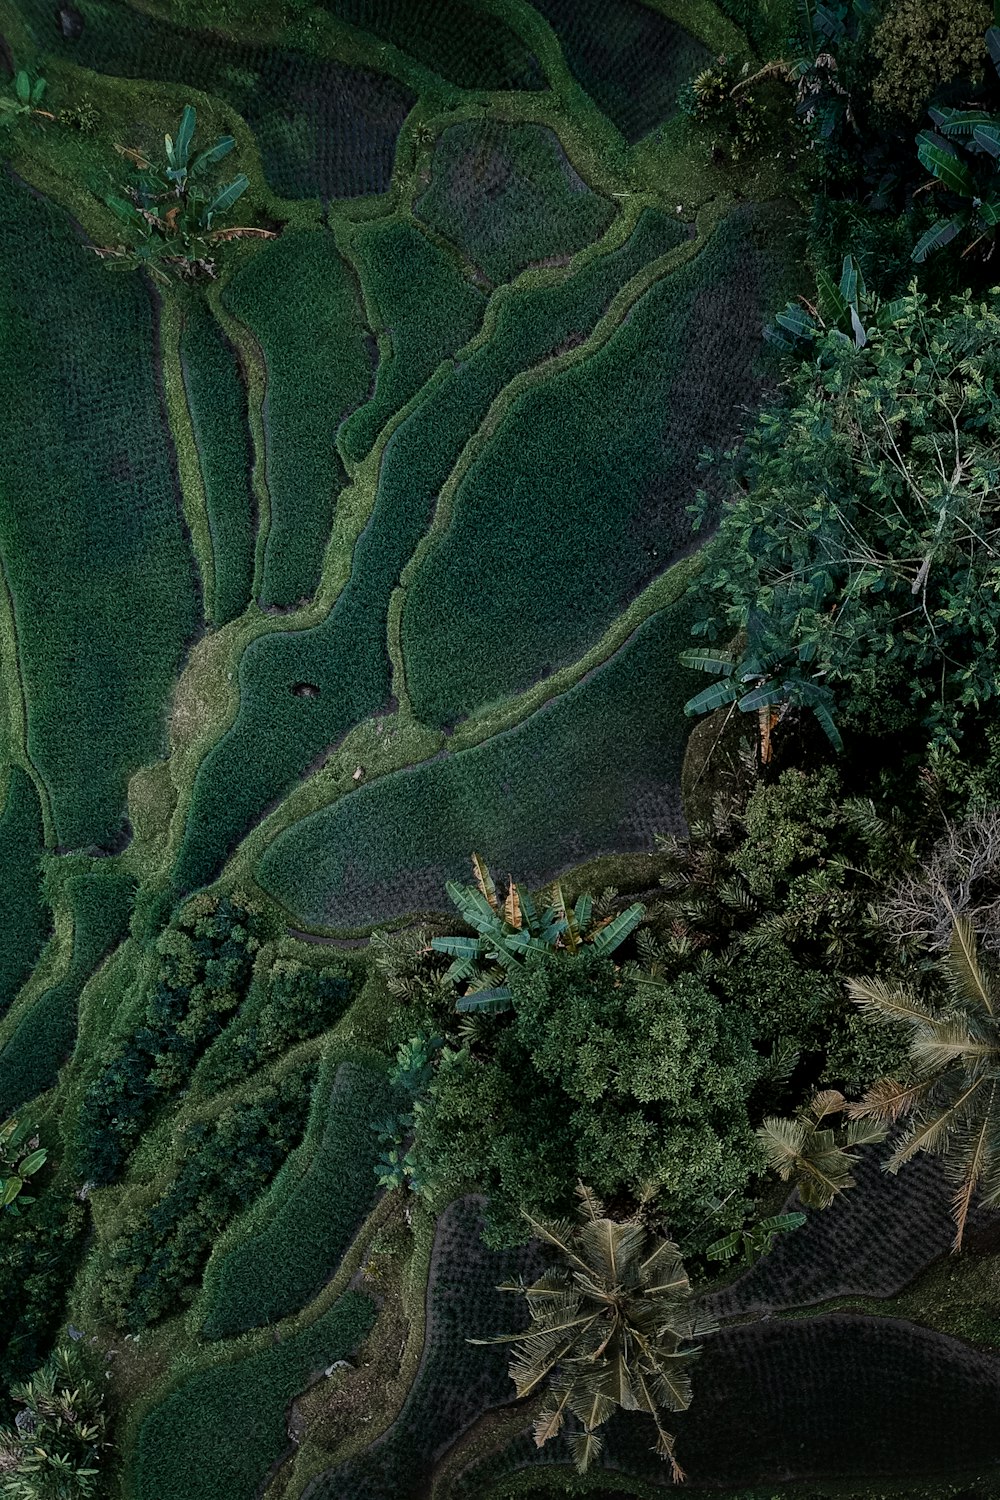 Fotografia aerea del lotto di alberi verdi